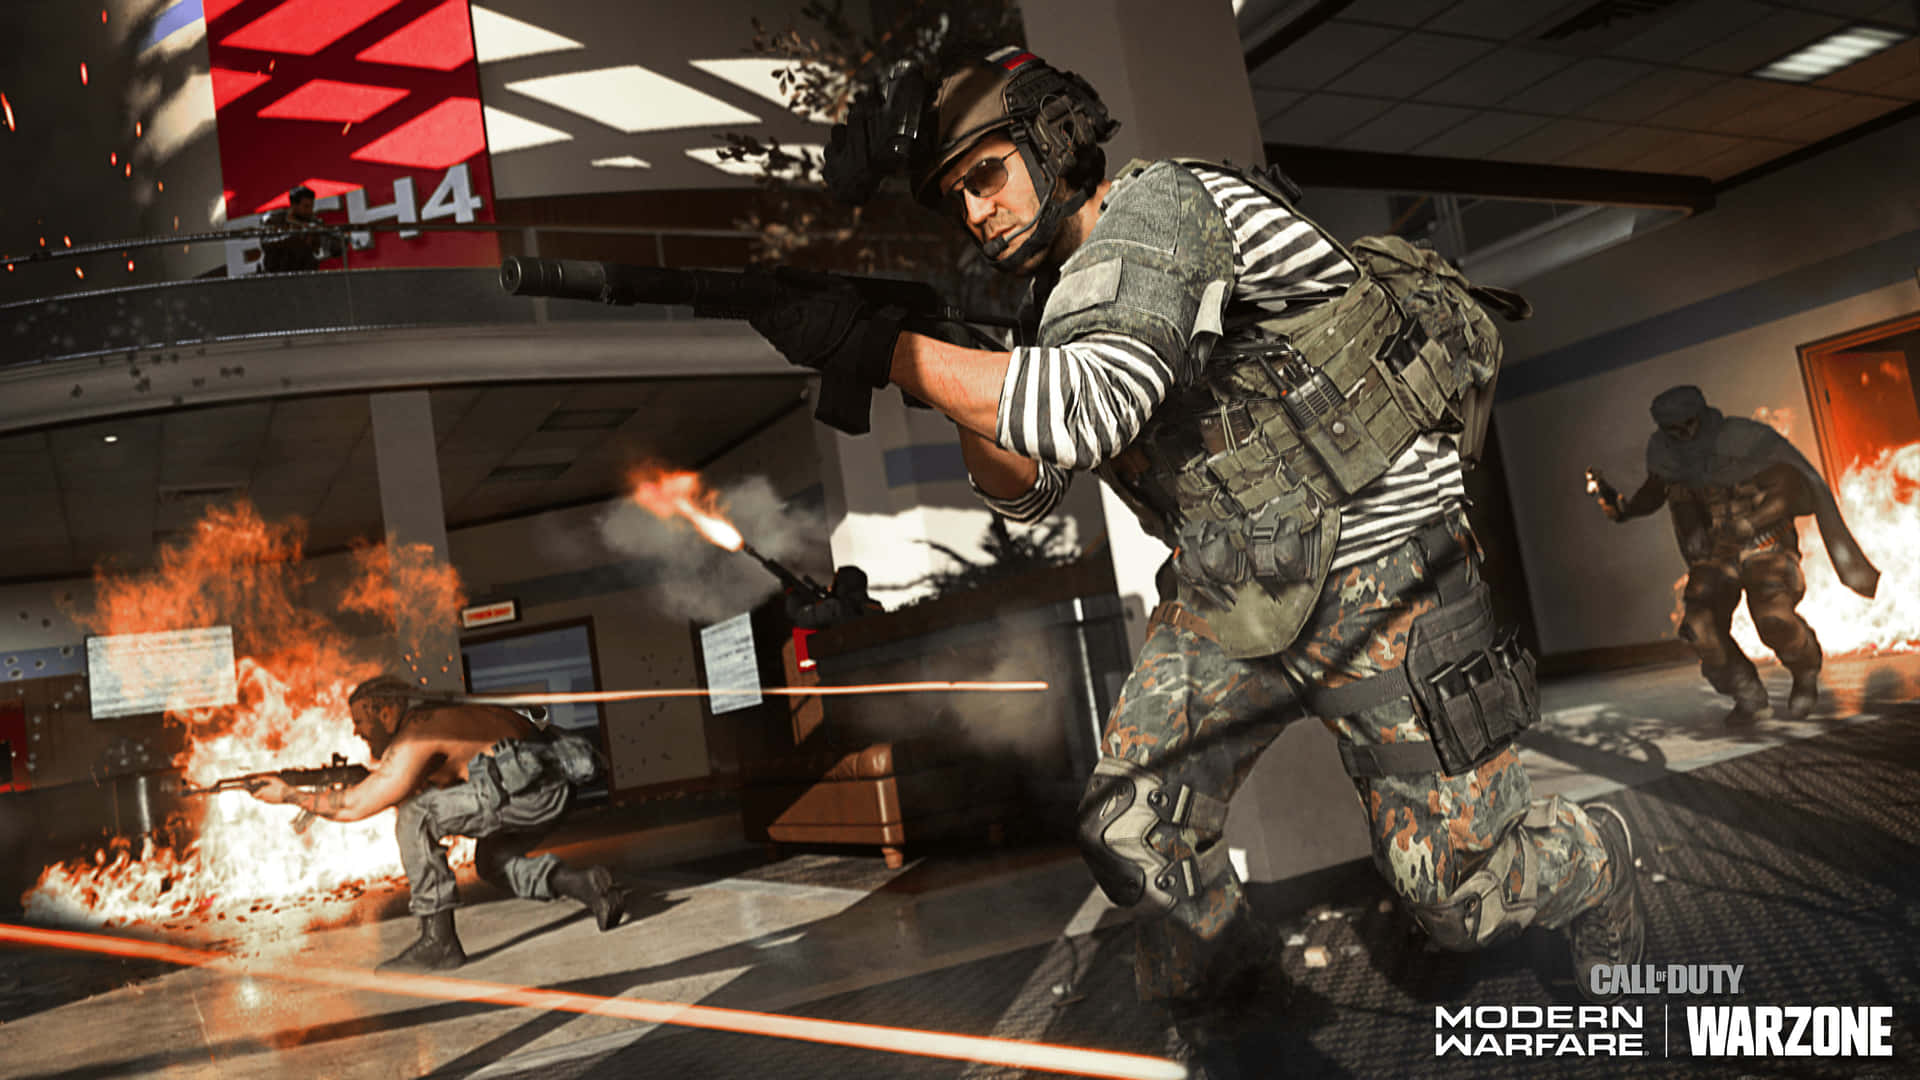 4kcall Of Duty Modern Warfare Bakgrundssoldater På En Lobby.